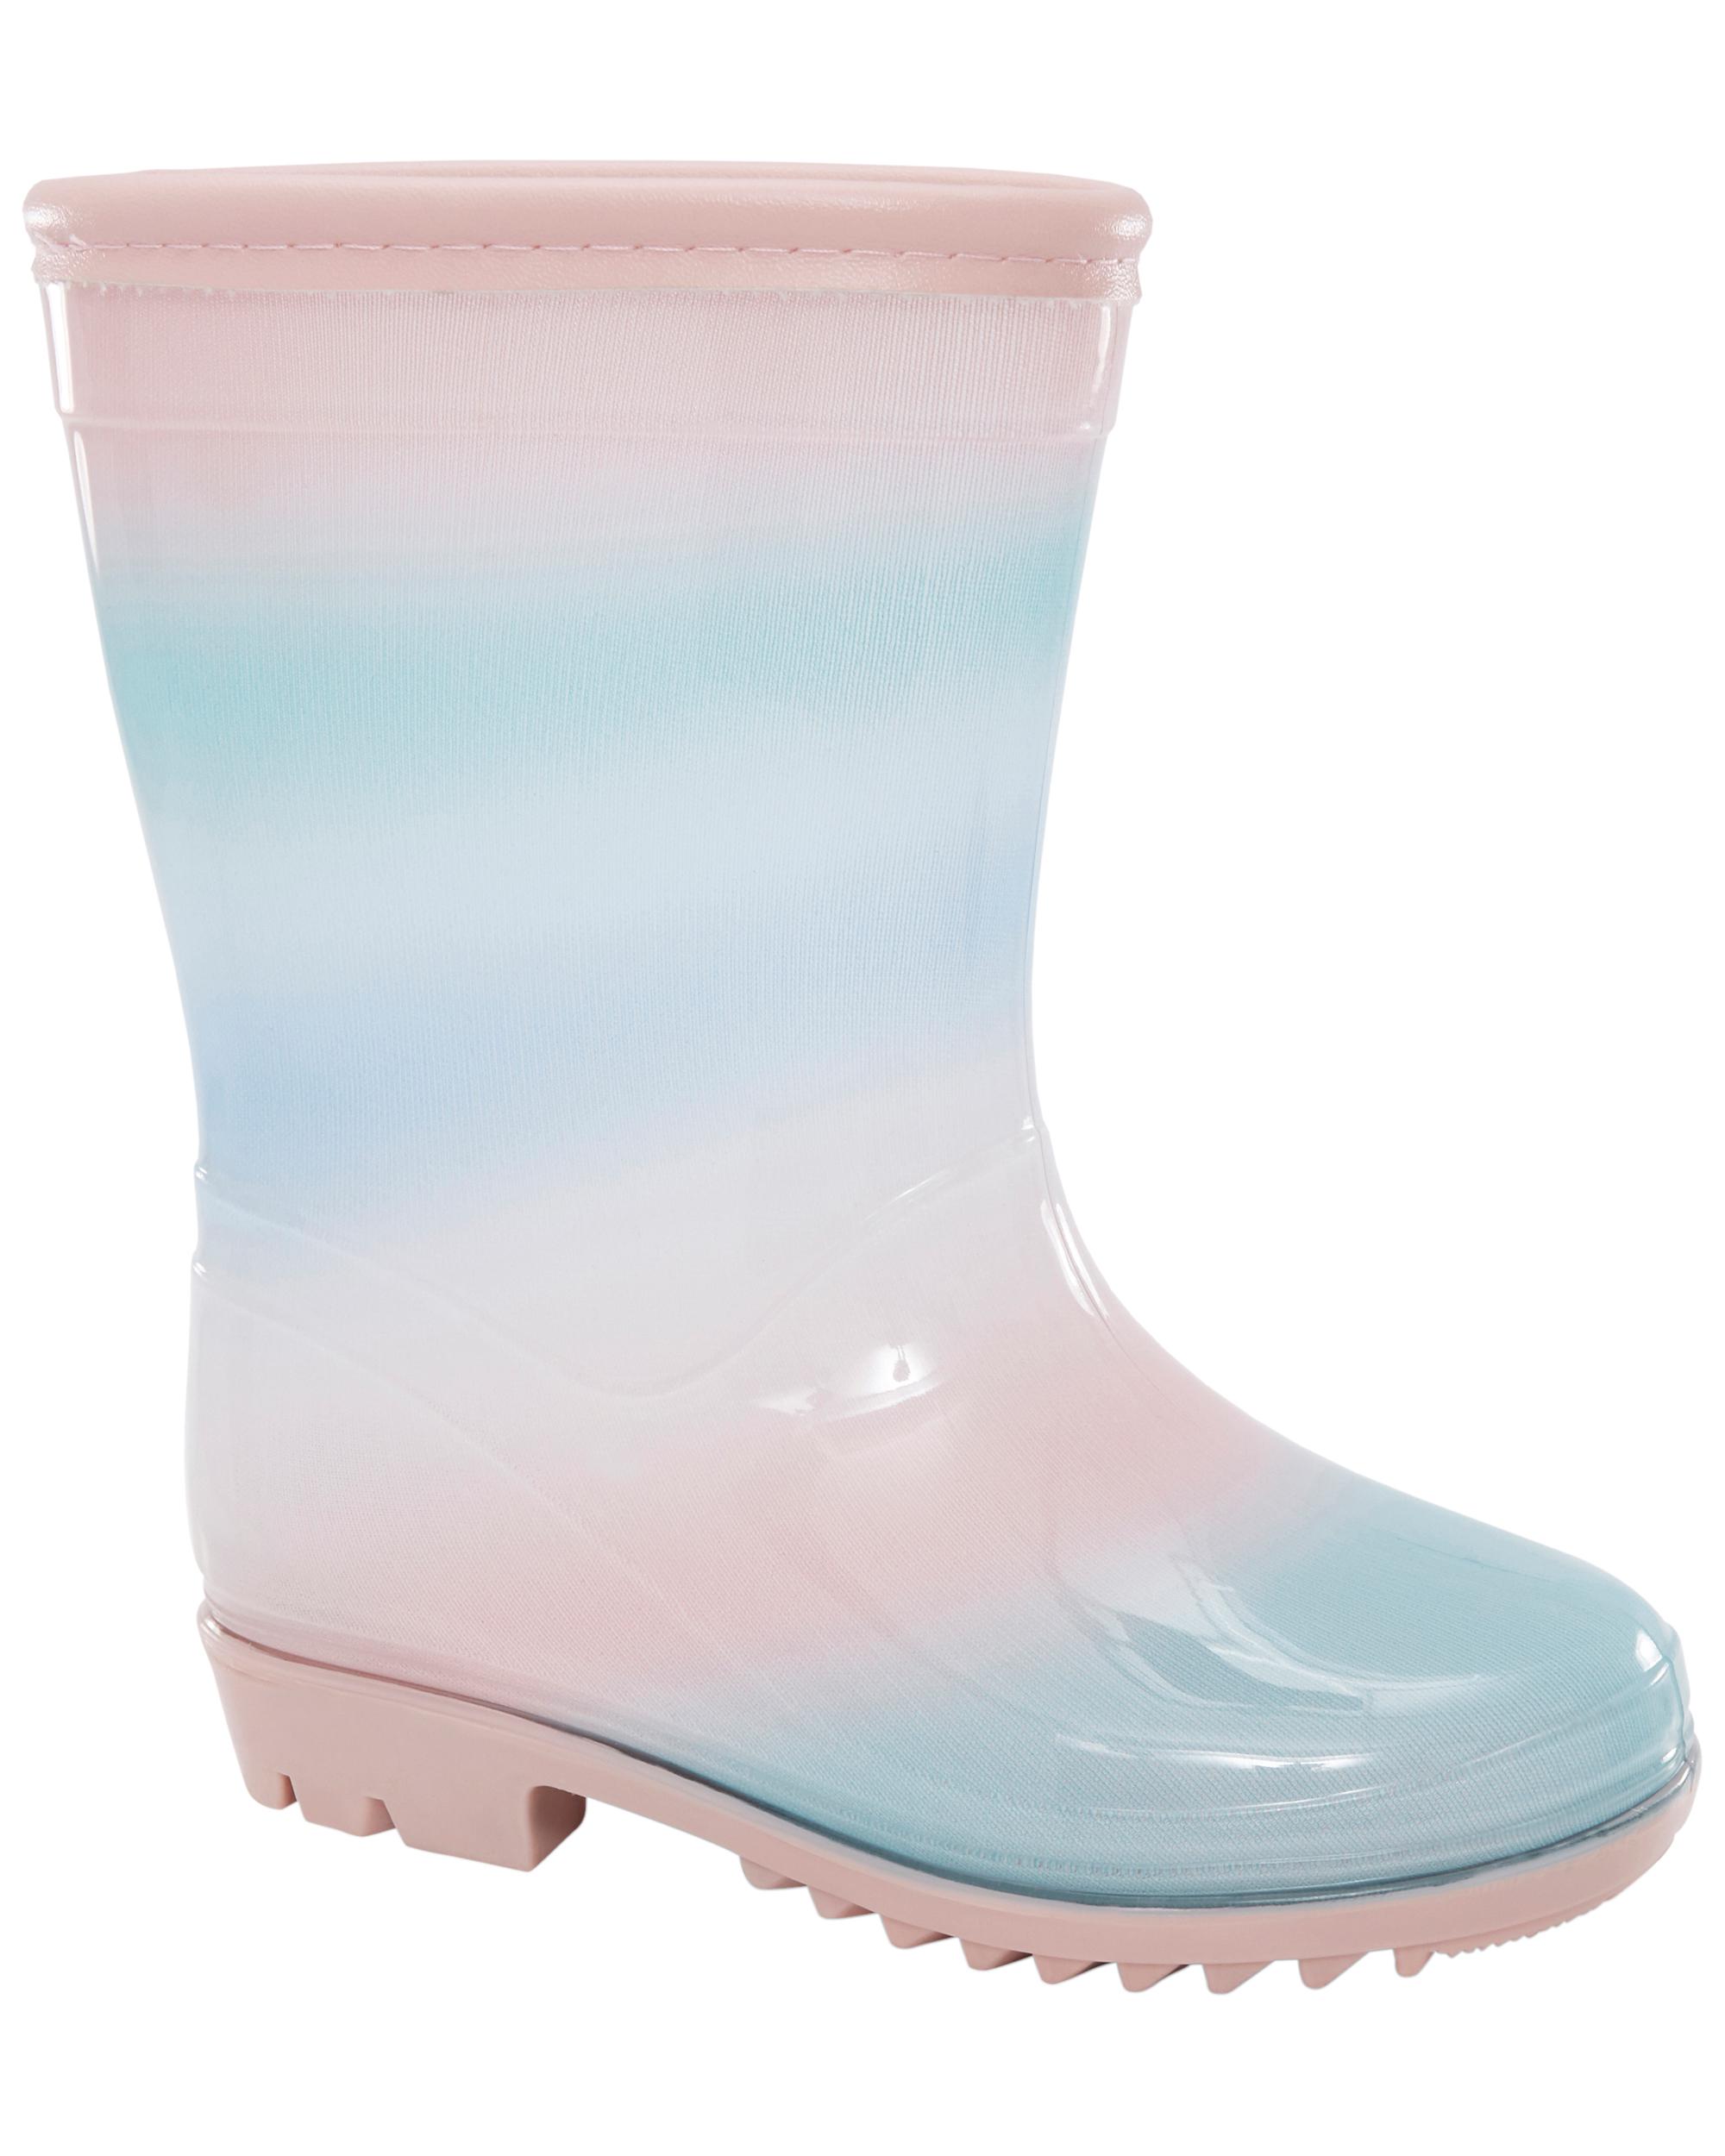 Toddler Rainbow Rain Boots